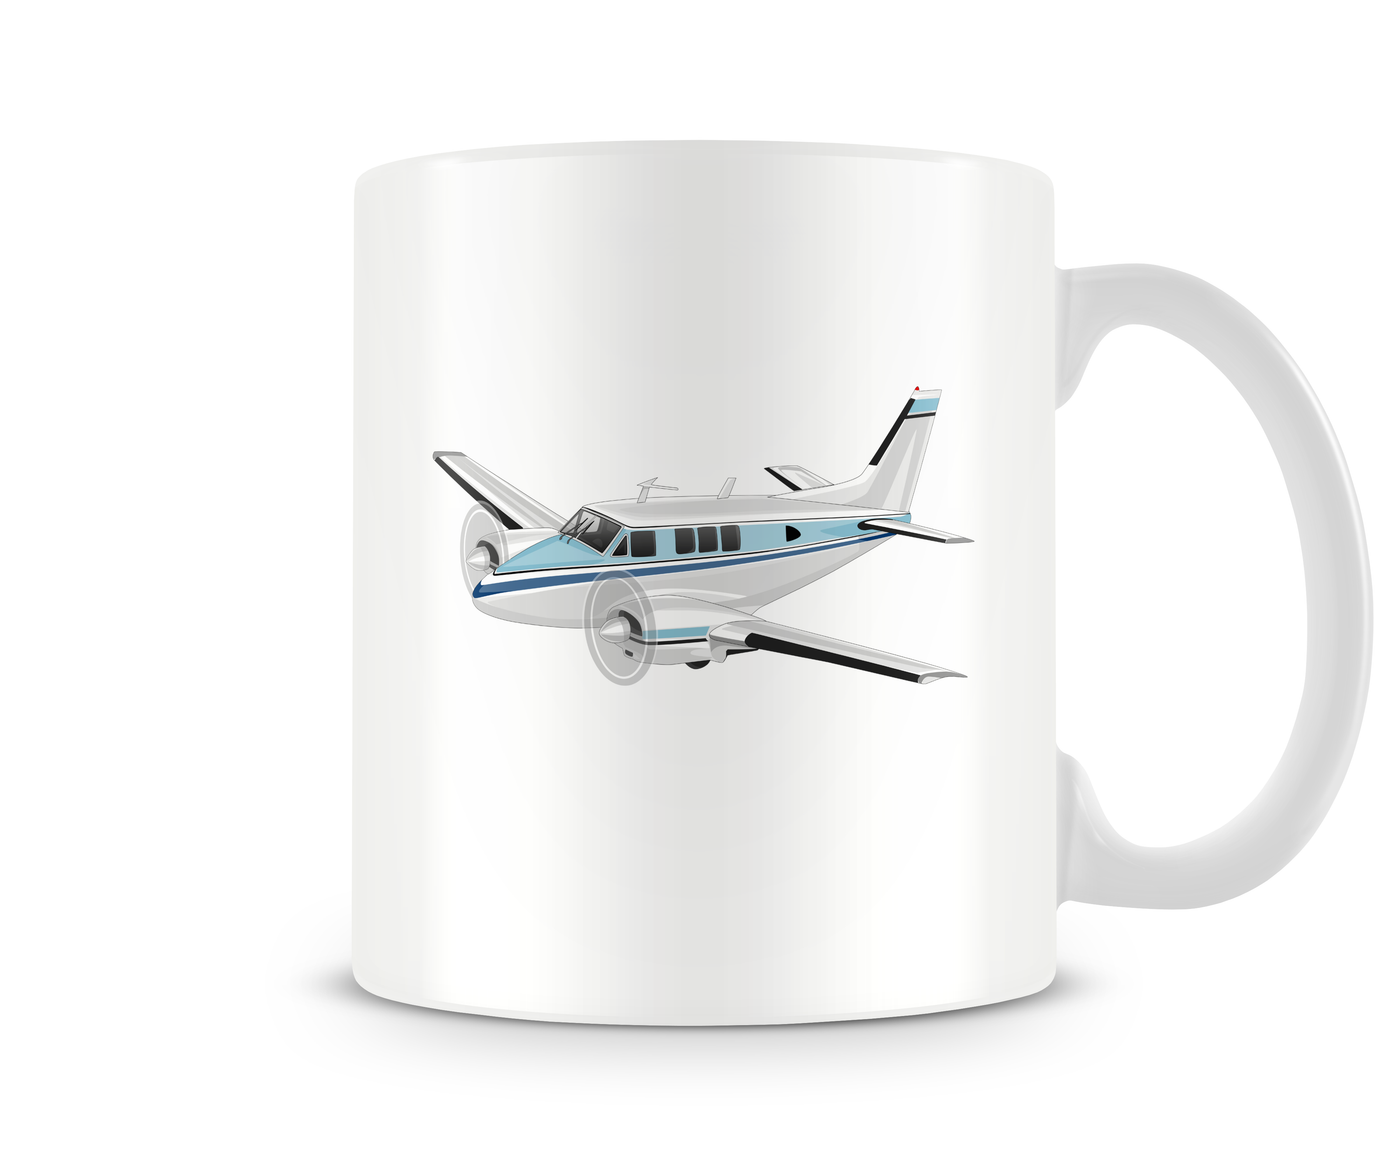 Beechcraft Queen Air Mug - Aircraft Mugs